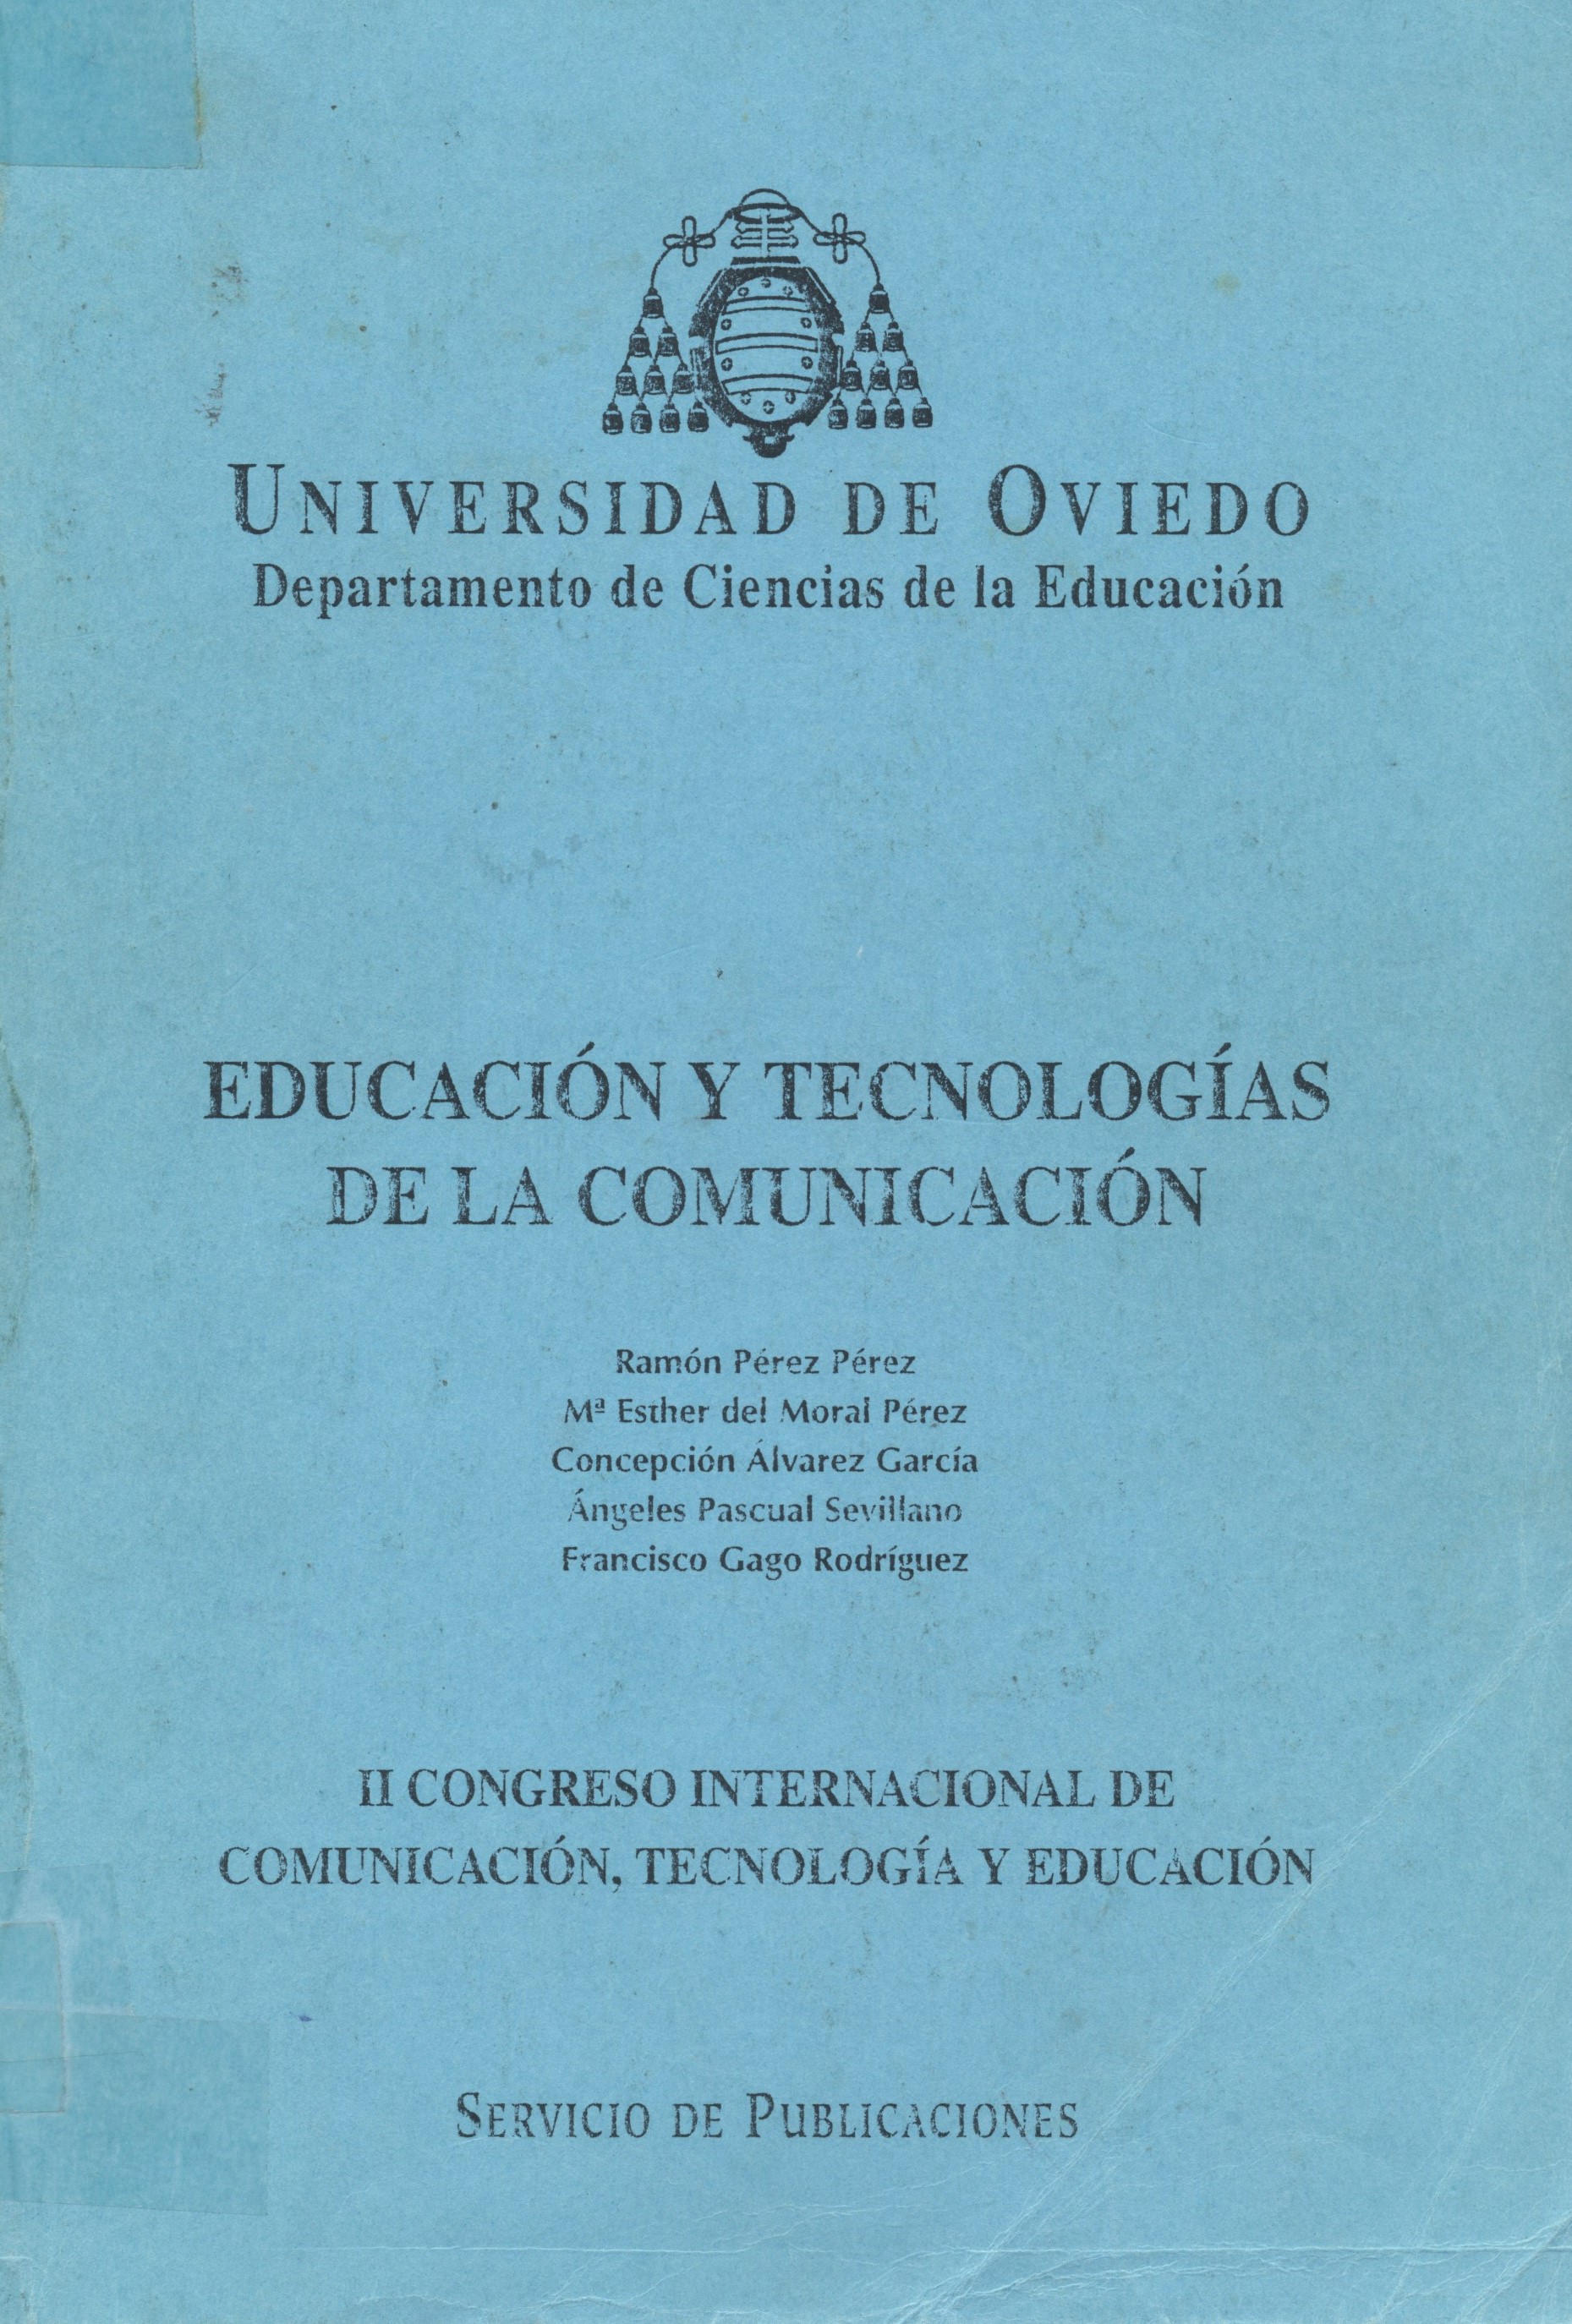 Imagen de portada del libro Educación y tecnologías de la comunicación